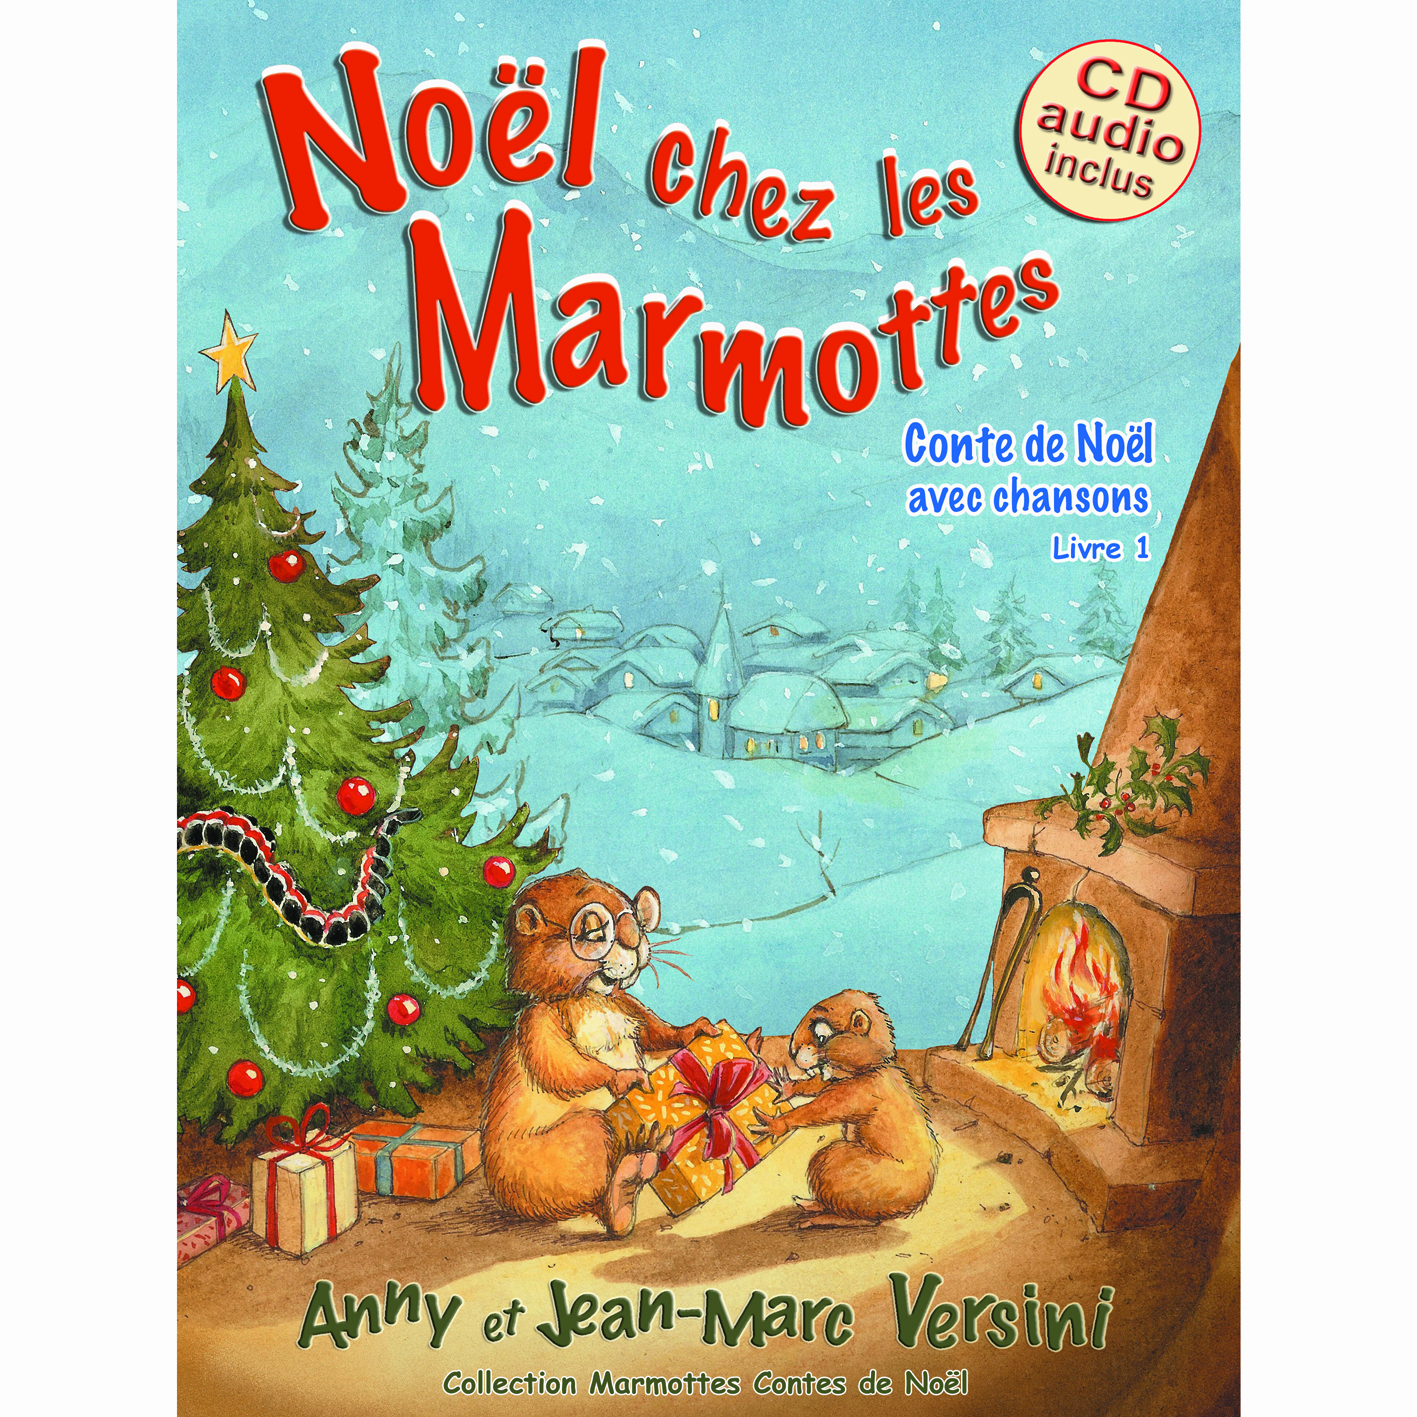 Les 2 Marmottes on X: Pour #Noel offrez-vous le Coffret bois